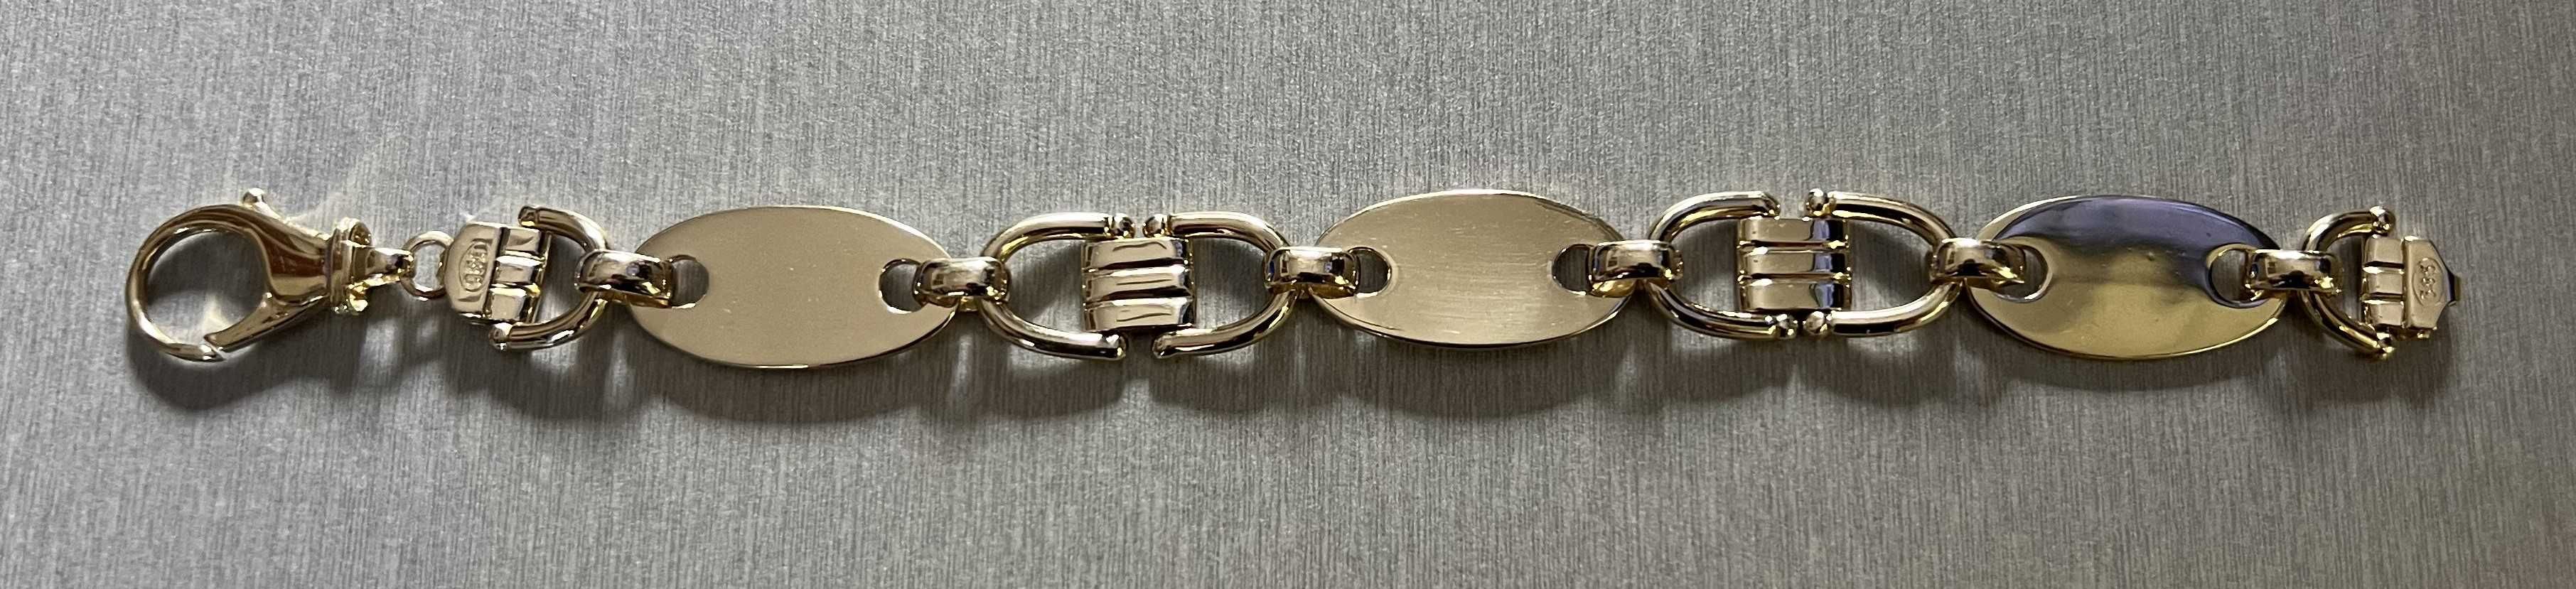 Cartier-złoto 585 zestaw-215zł/gram.